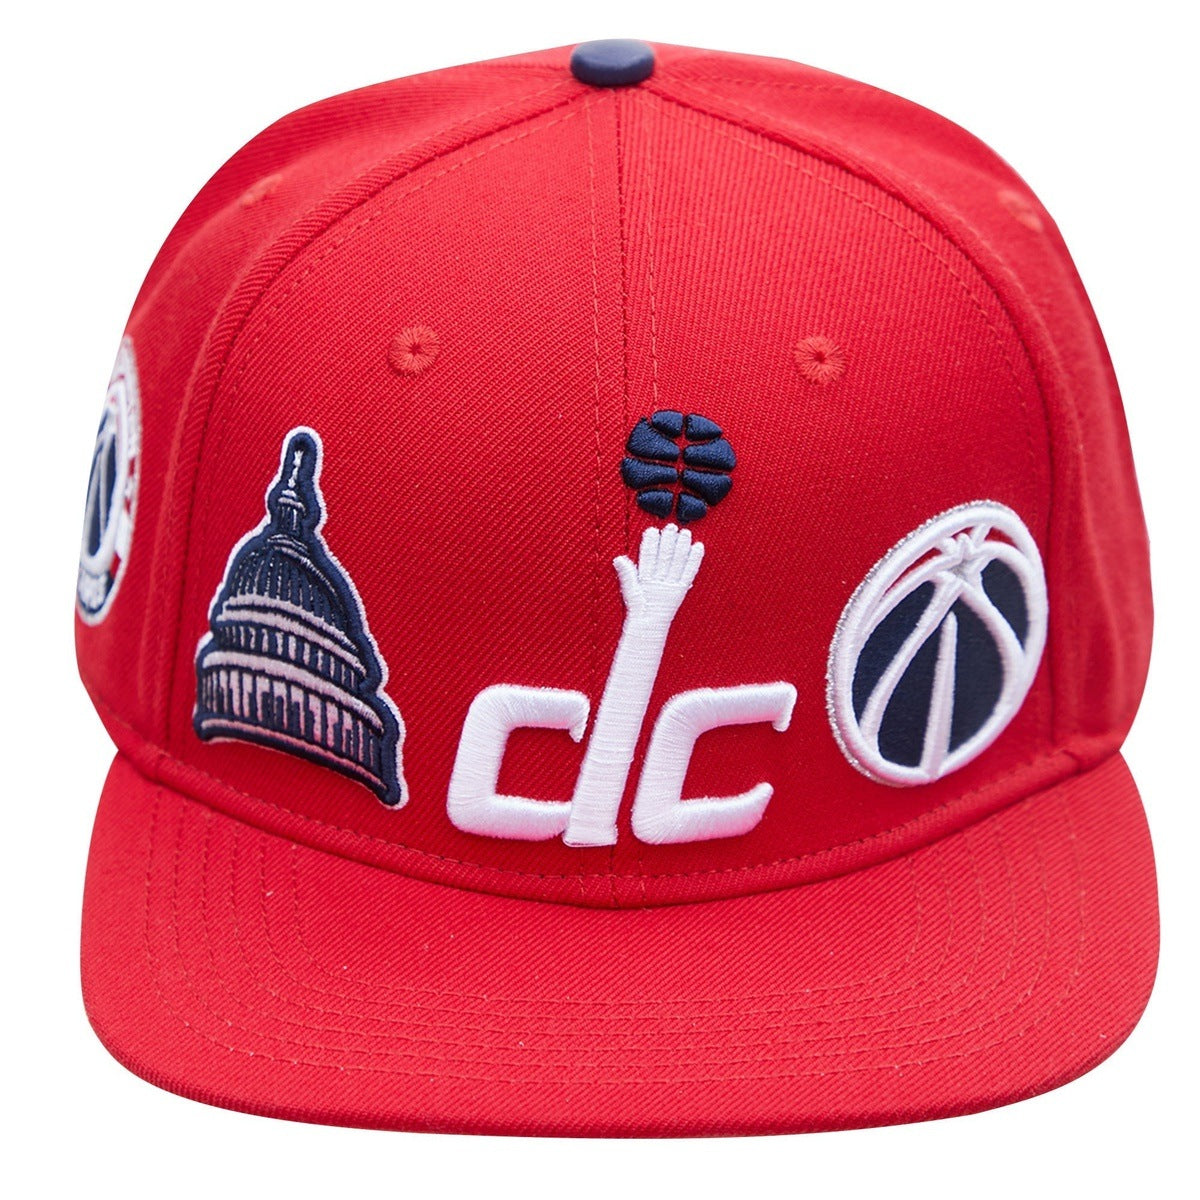 NBA WASHINGTON WIZARDS CITY DOUBLE FRONT LOGO UNISEX SNAPBACK HAT (RED)